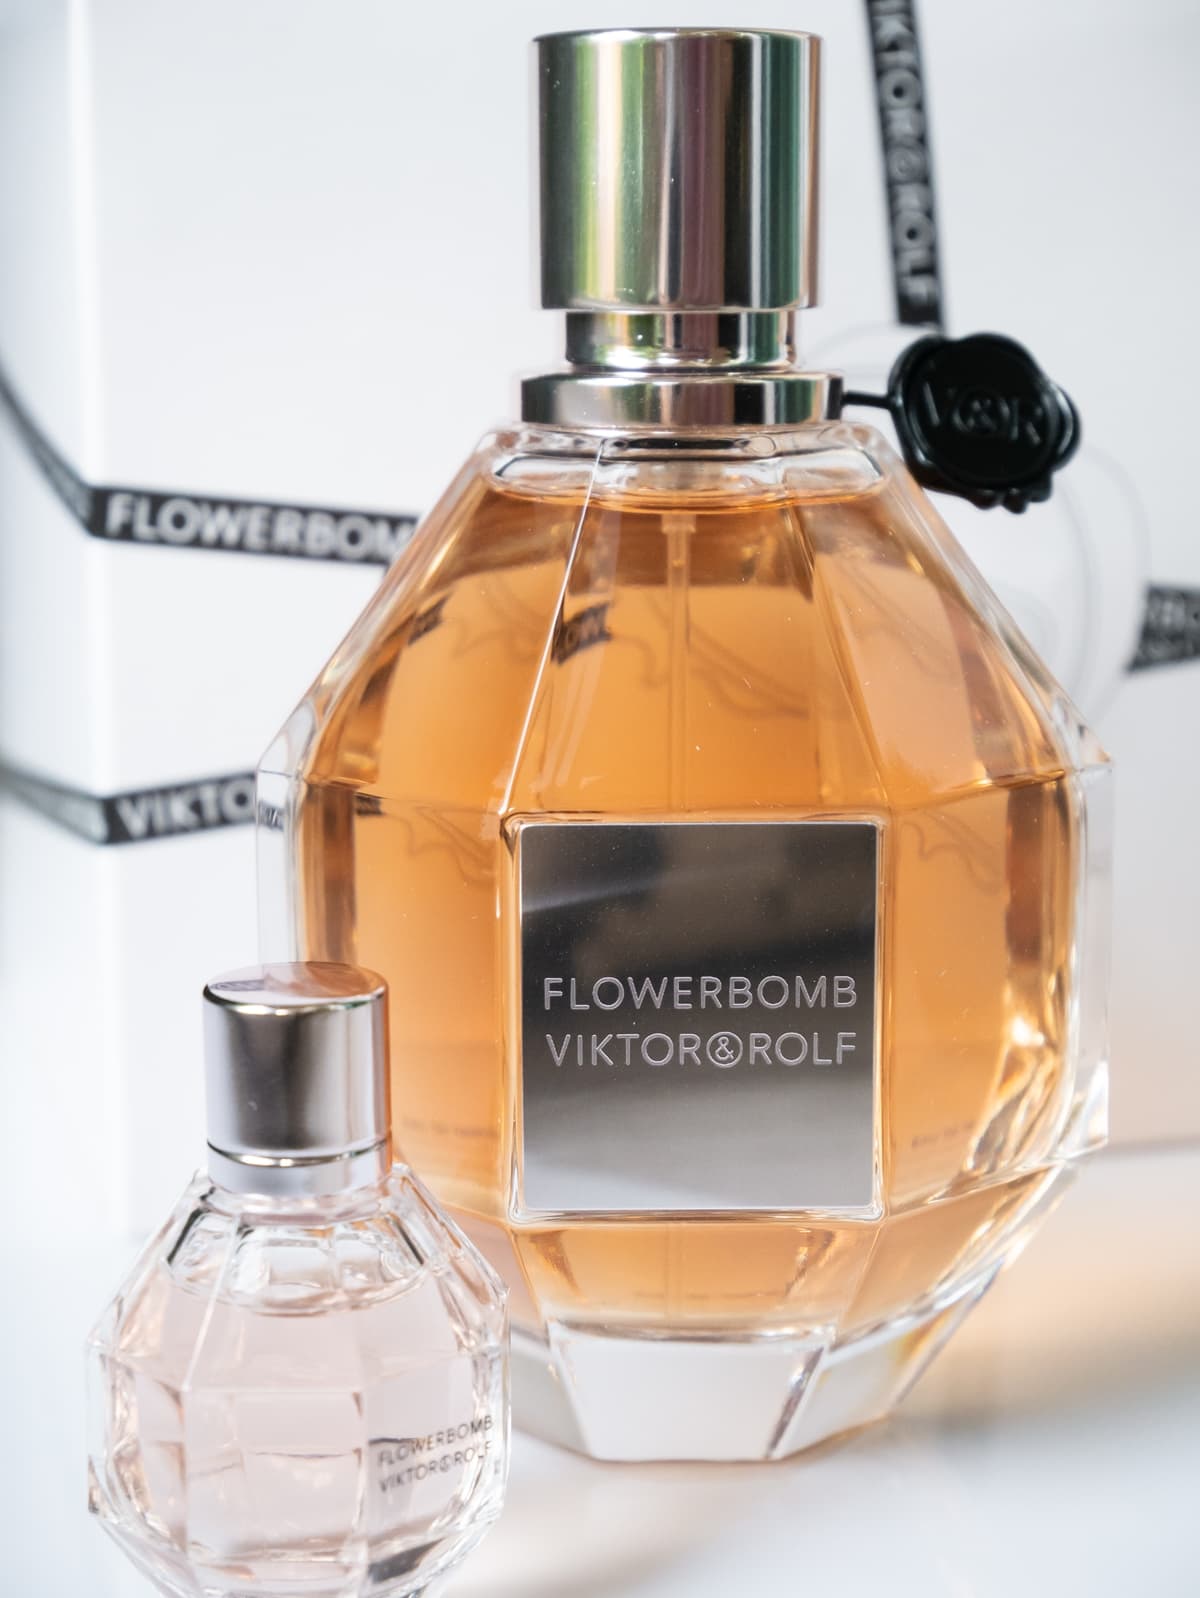 2004's Flowerbomb: Viktor & Rolf's breakthrough in women's fragrance